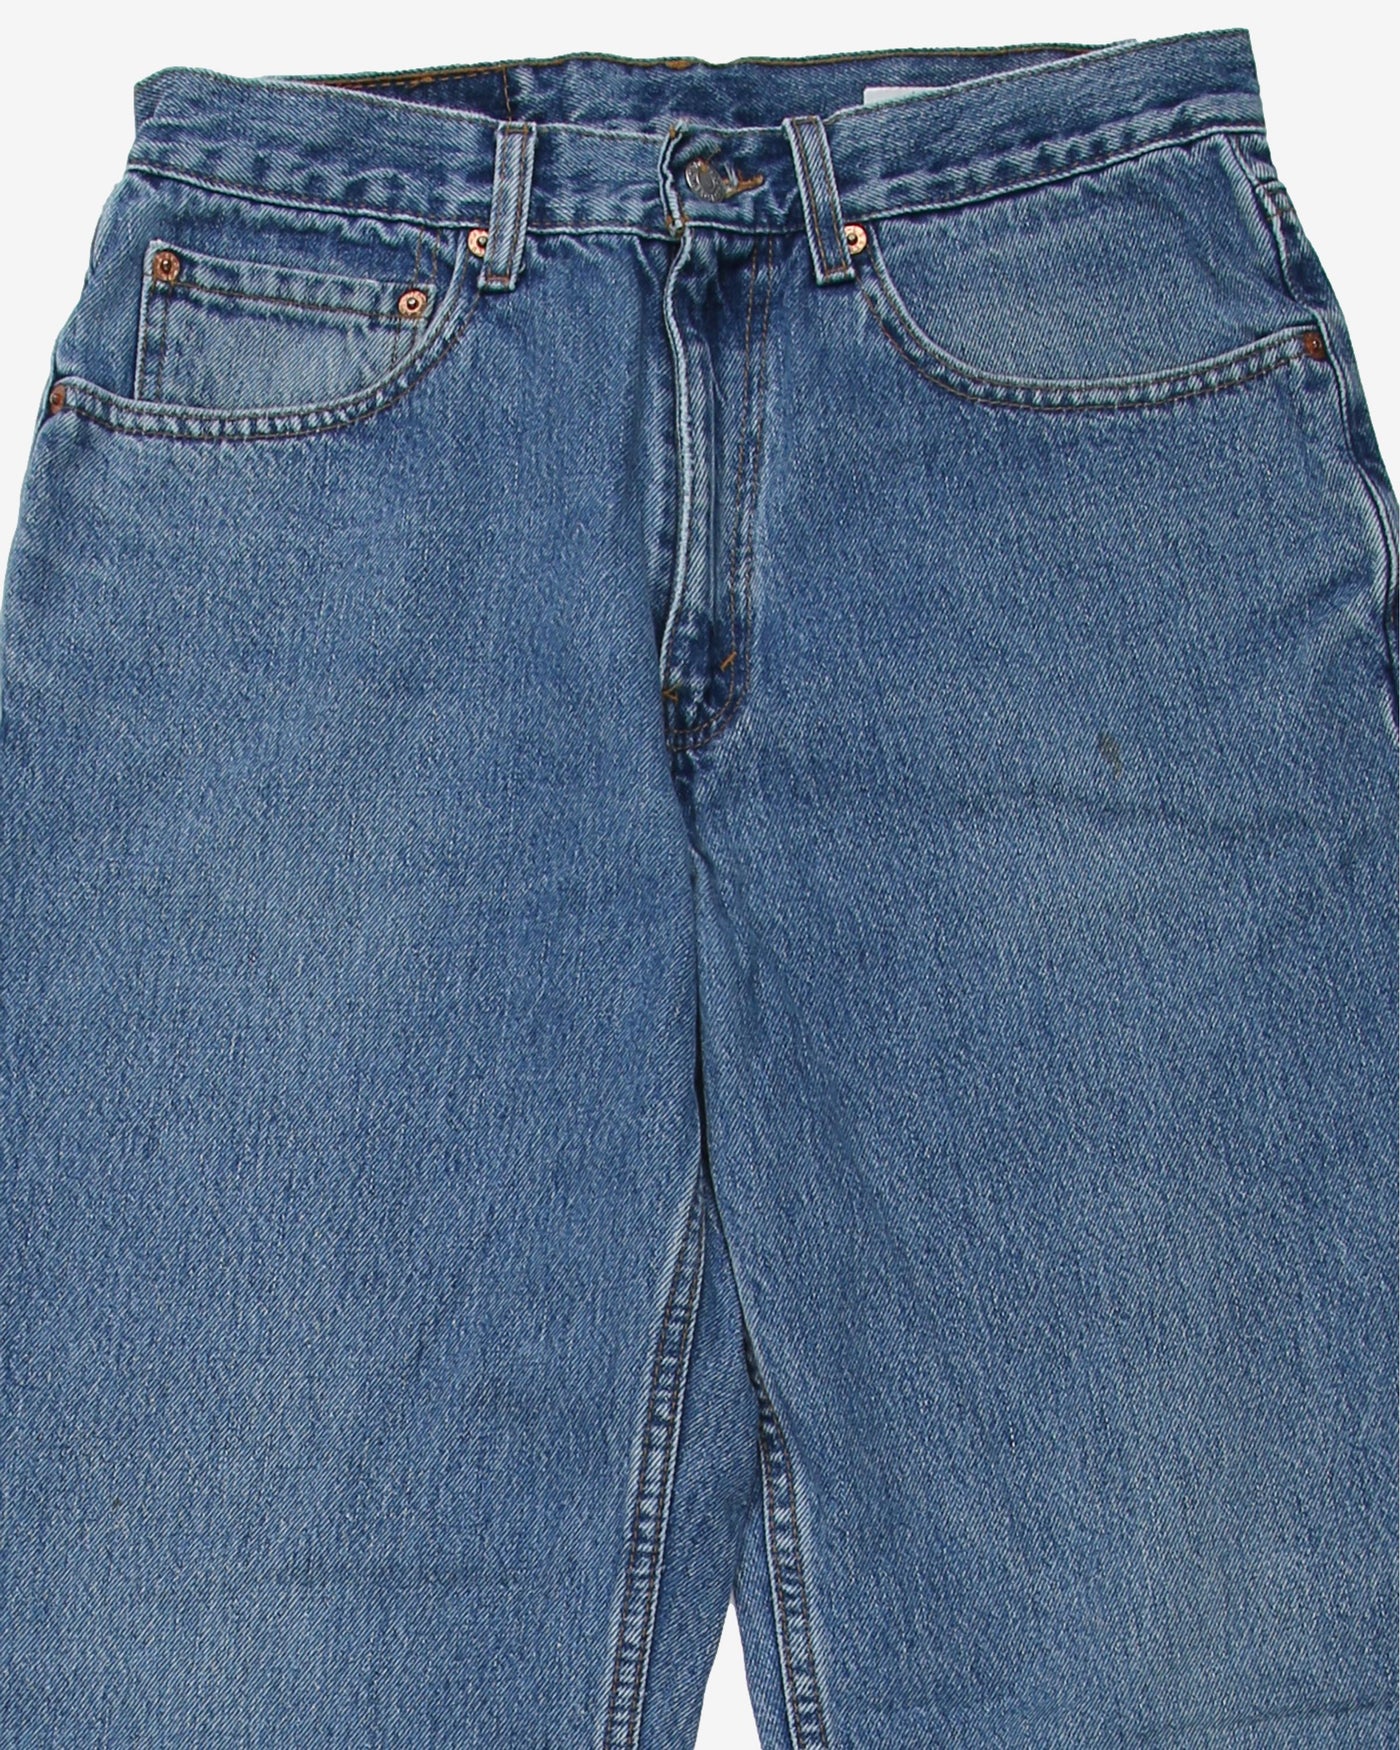 Vintage Levi's 550 Denim Blue Stonewash Jeans - W30 L31